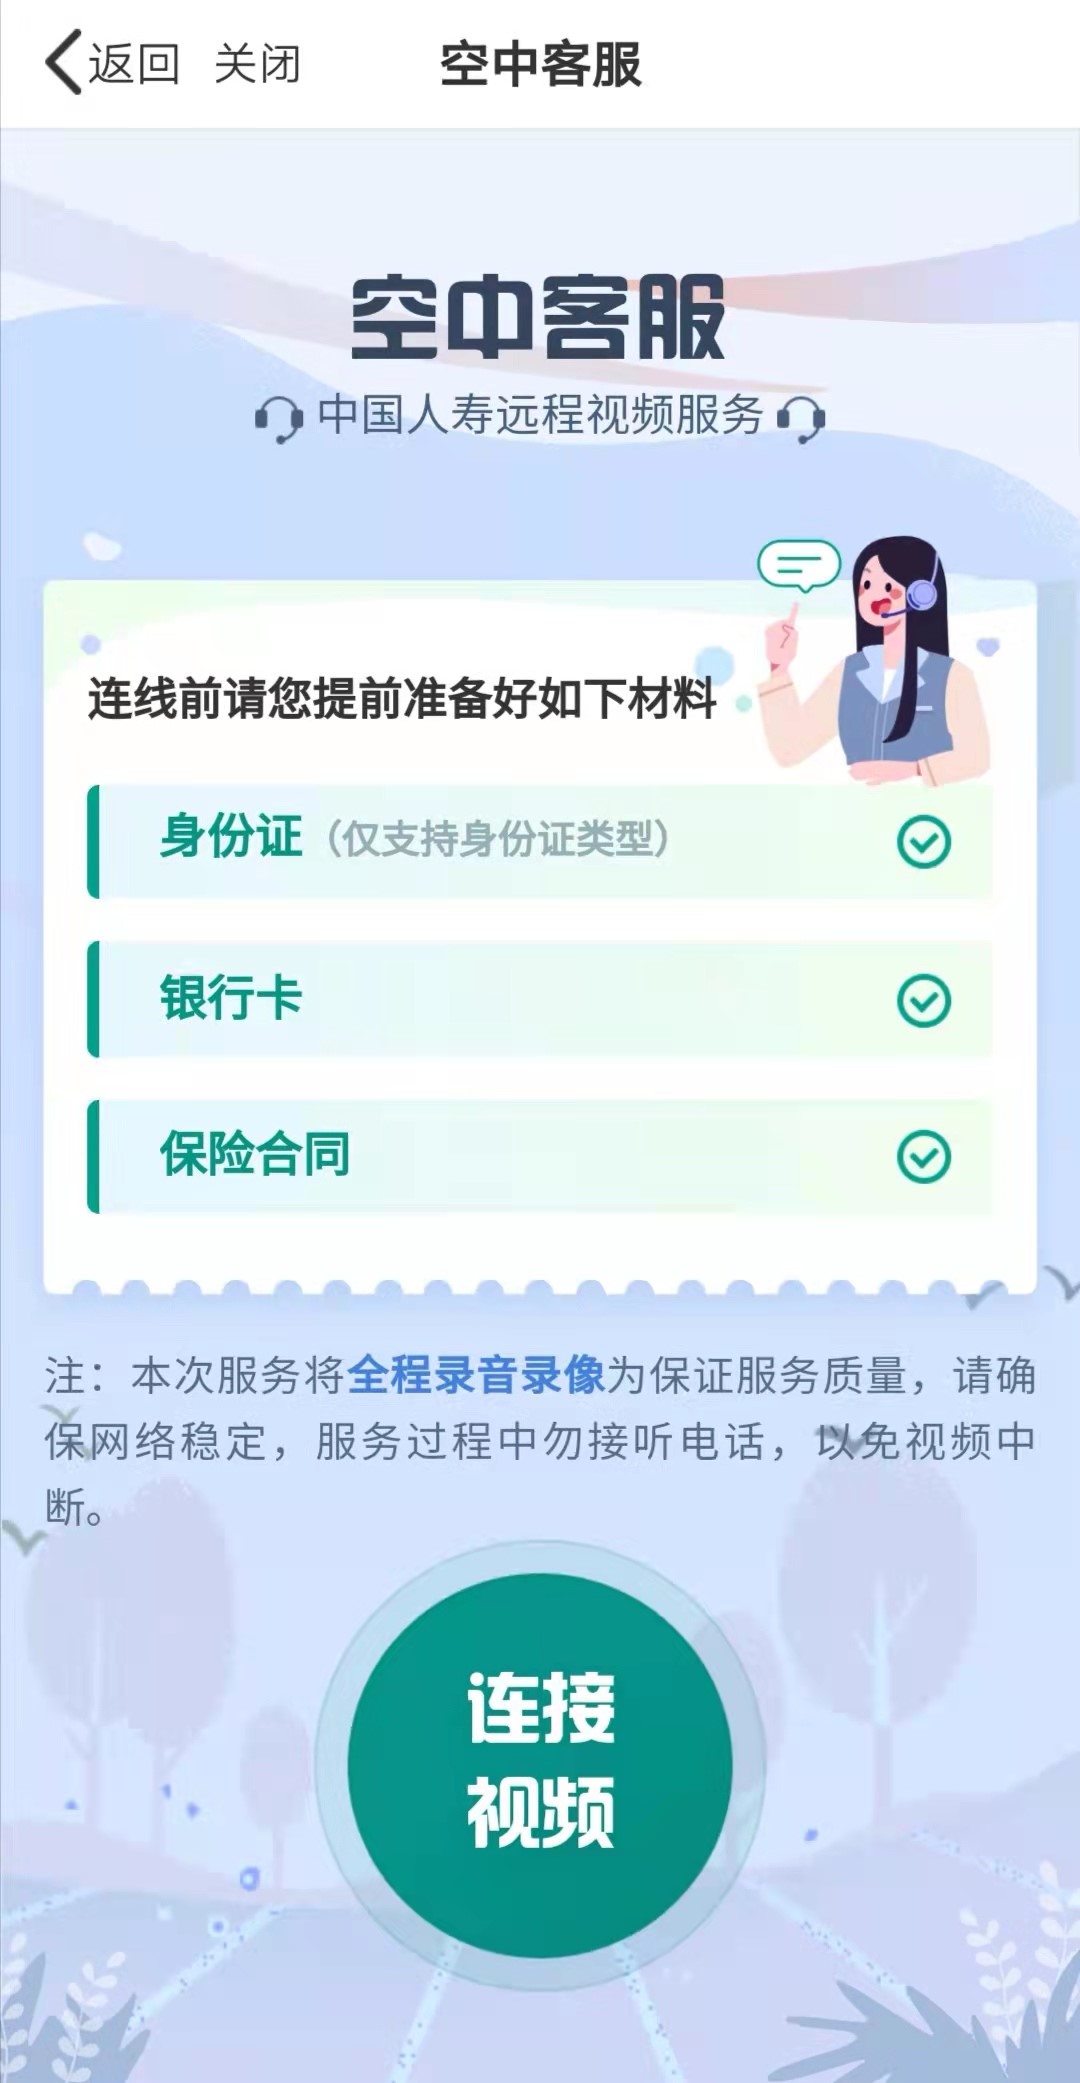 科技普惠适老先行中国人寿推出寿险app尊老模式